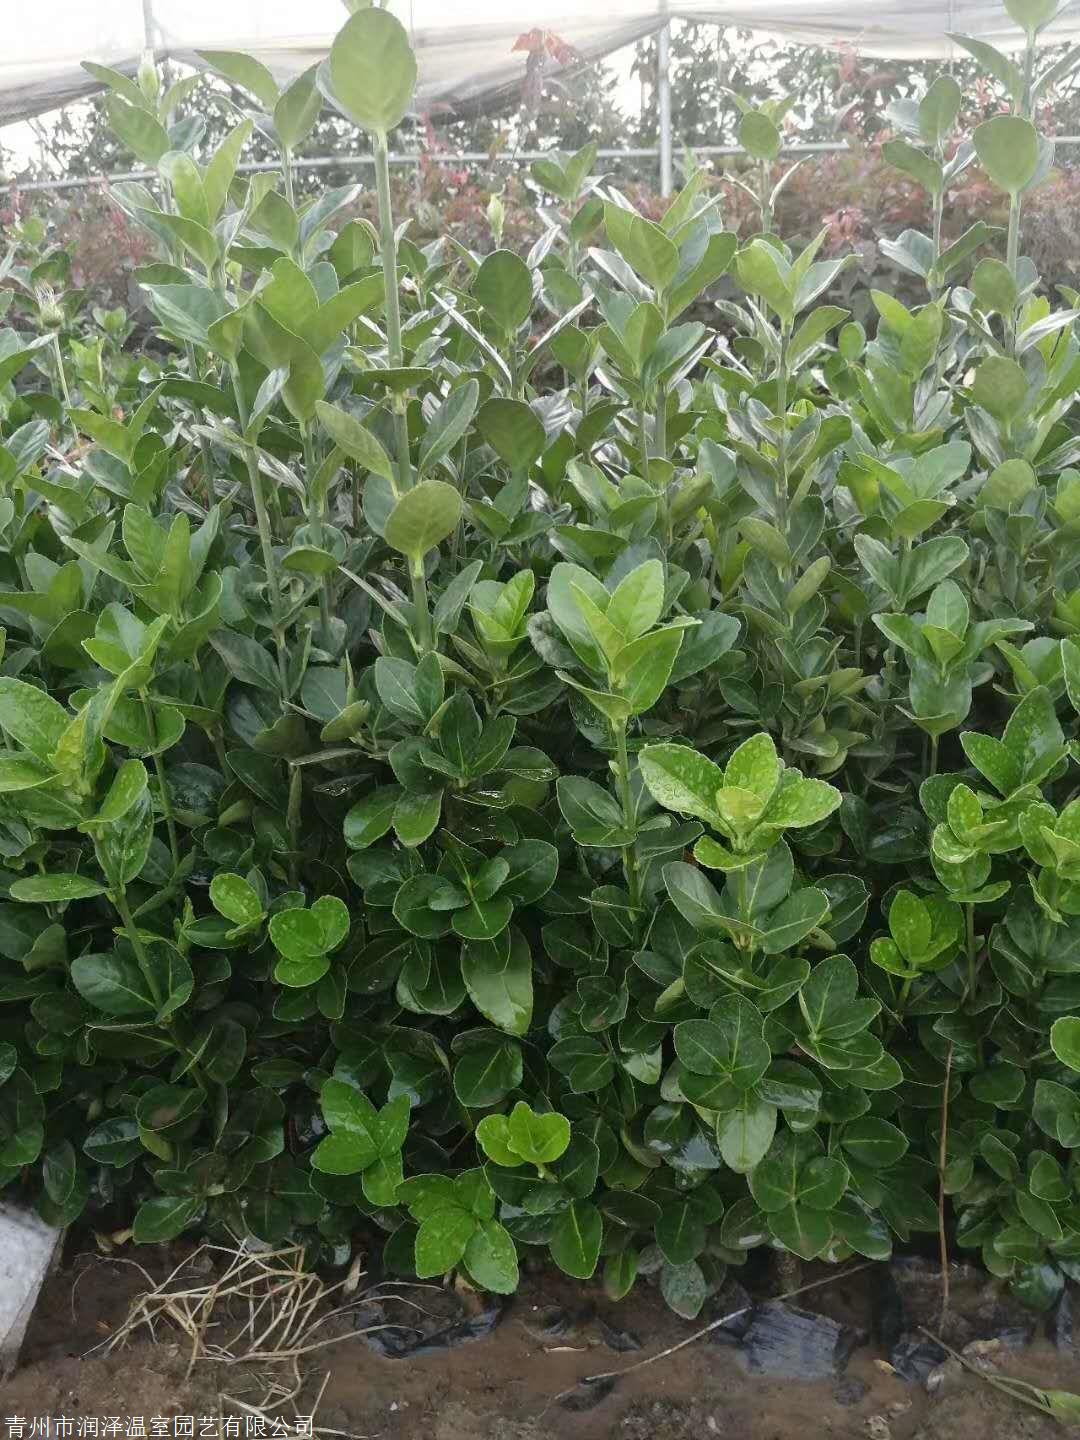 卫矛属的常绿阔叶树种,原产日本